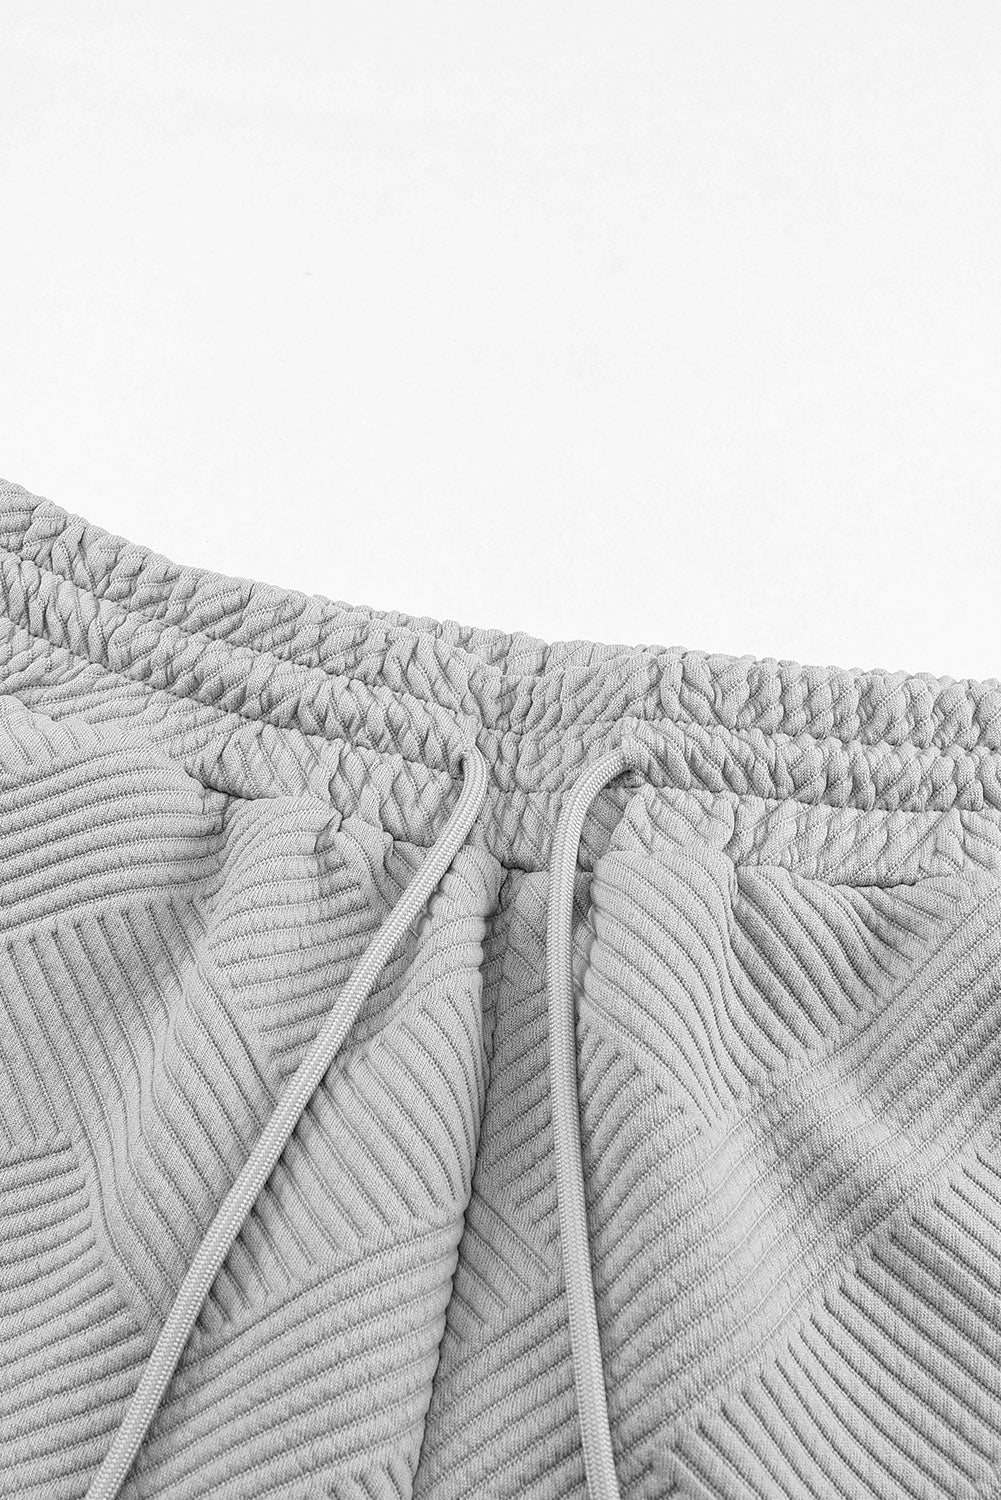 Gray Textured Long Sleeve Top and Drawstring Shorts Set